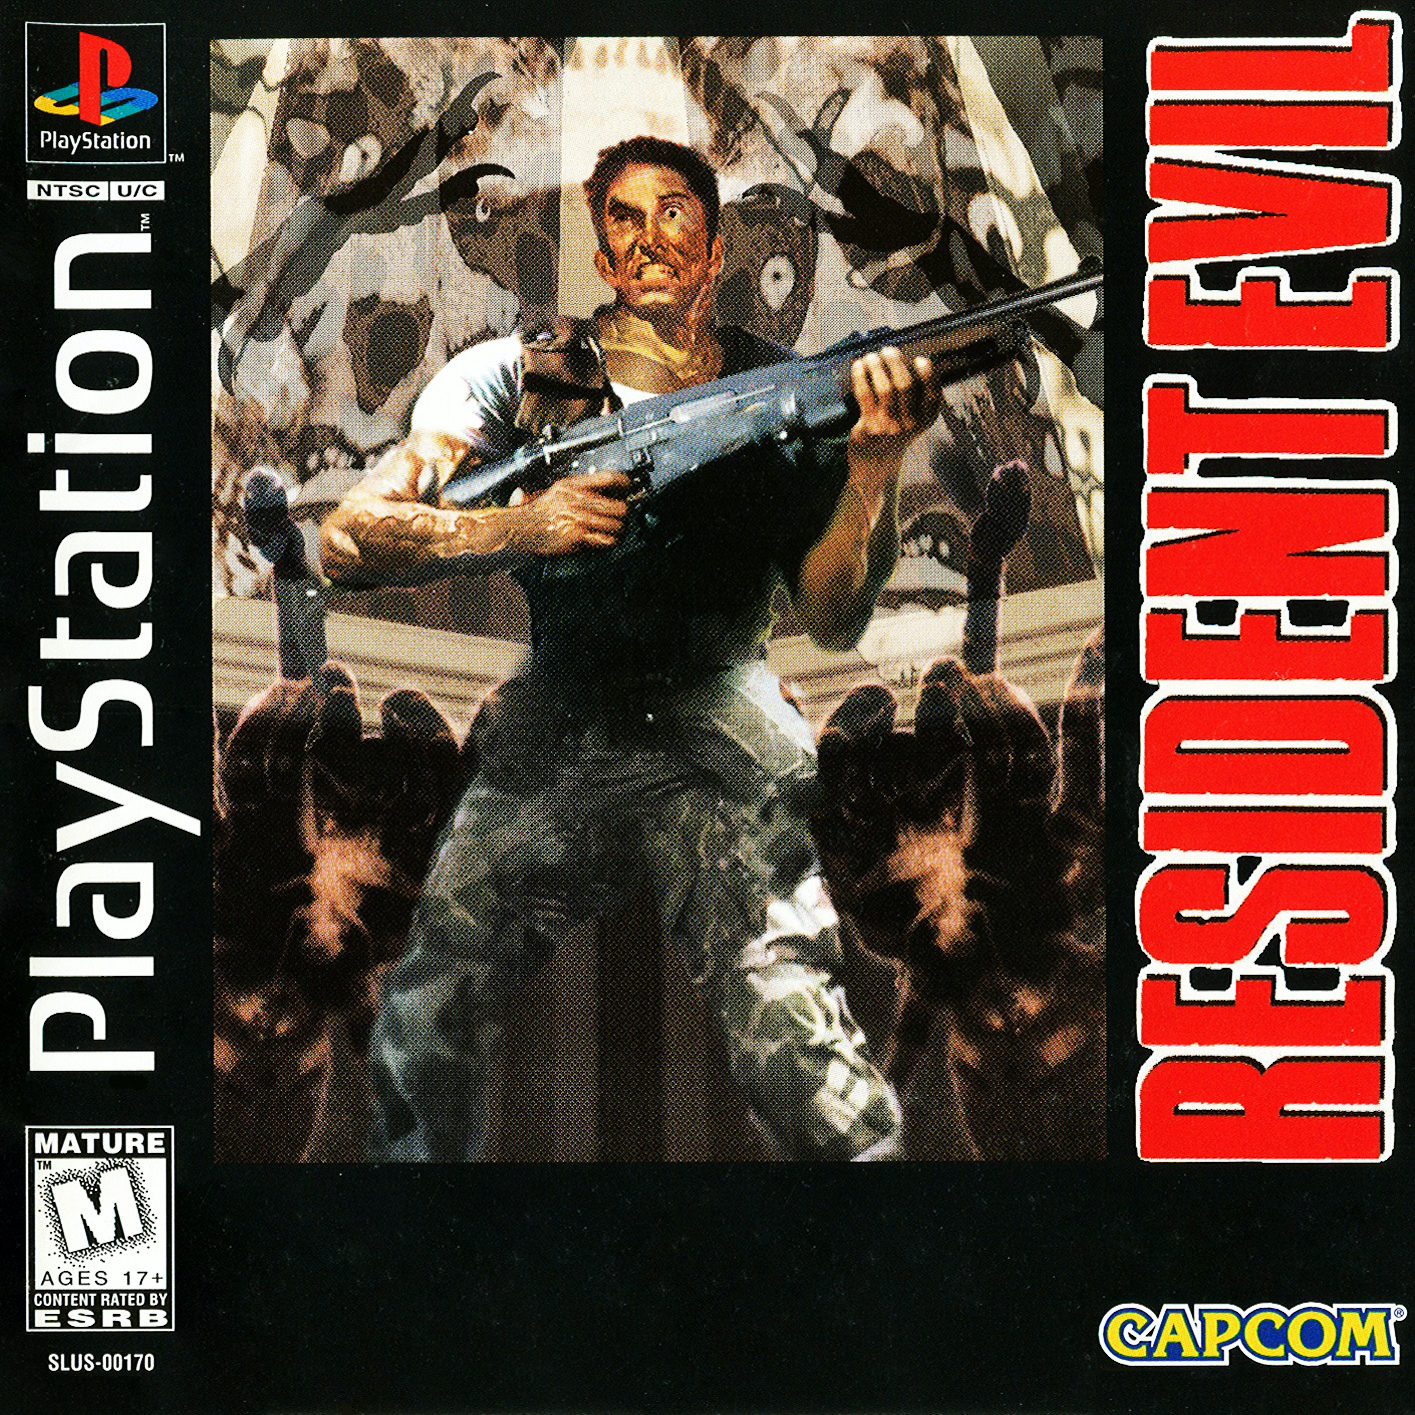 Juego gratuito: Resident Evil 0 Demake es una versión del survival horror  de Gamecube al estilo PS1 - • Survival Horror Downloads • SHD